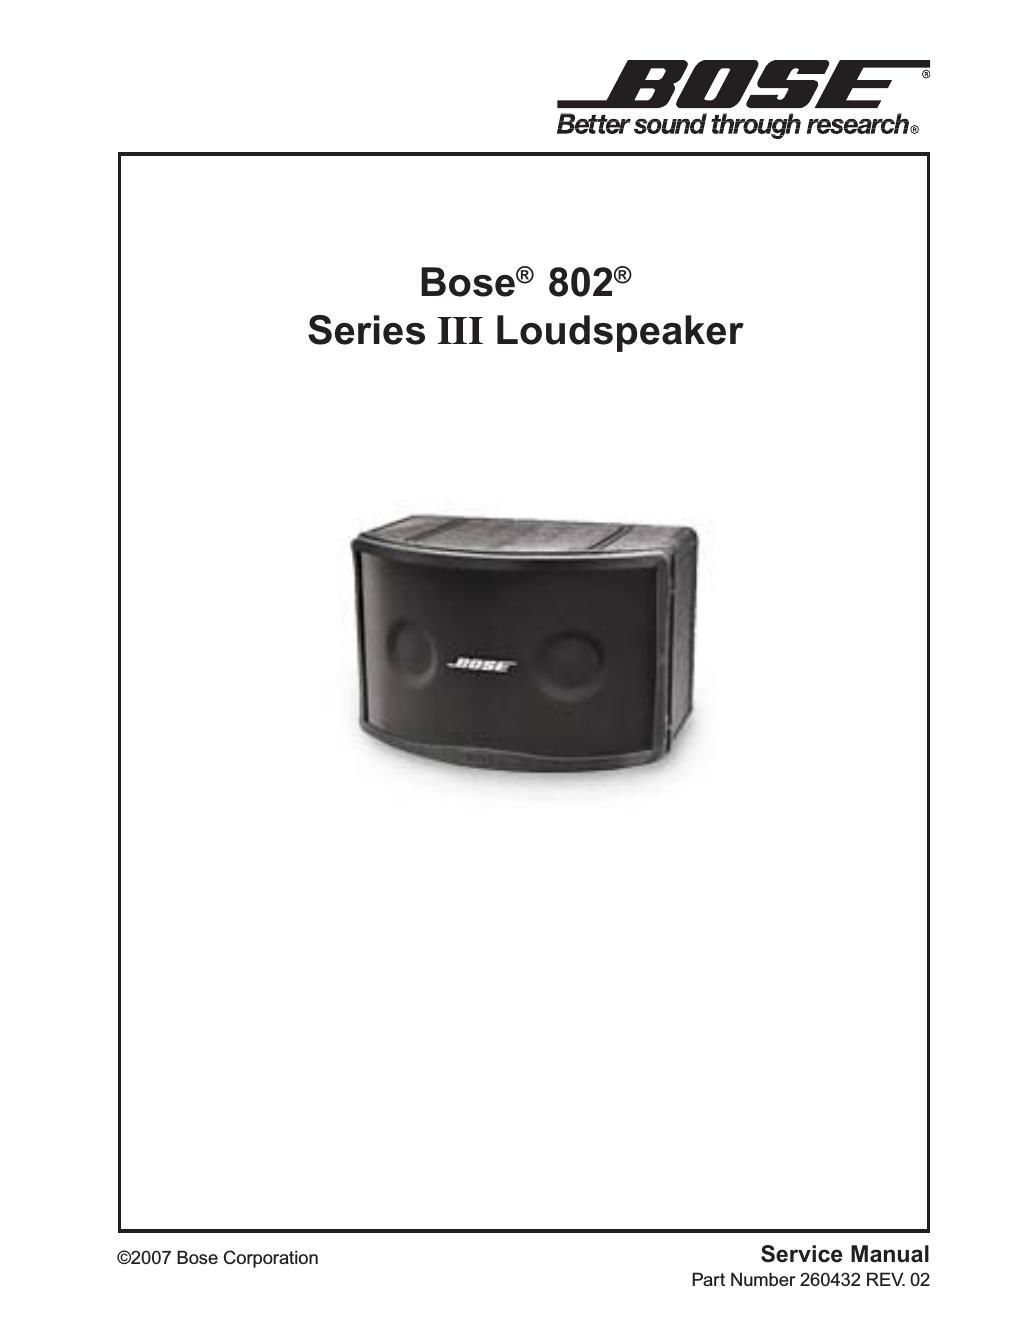 bose 802 iii speaker r02